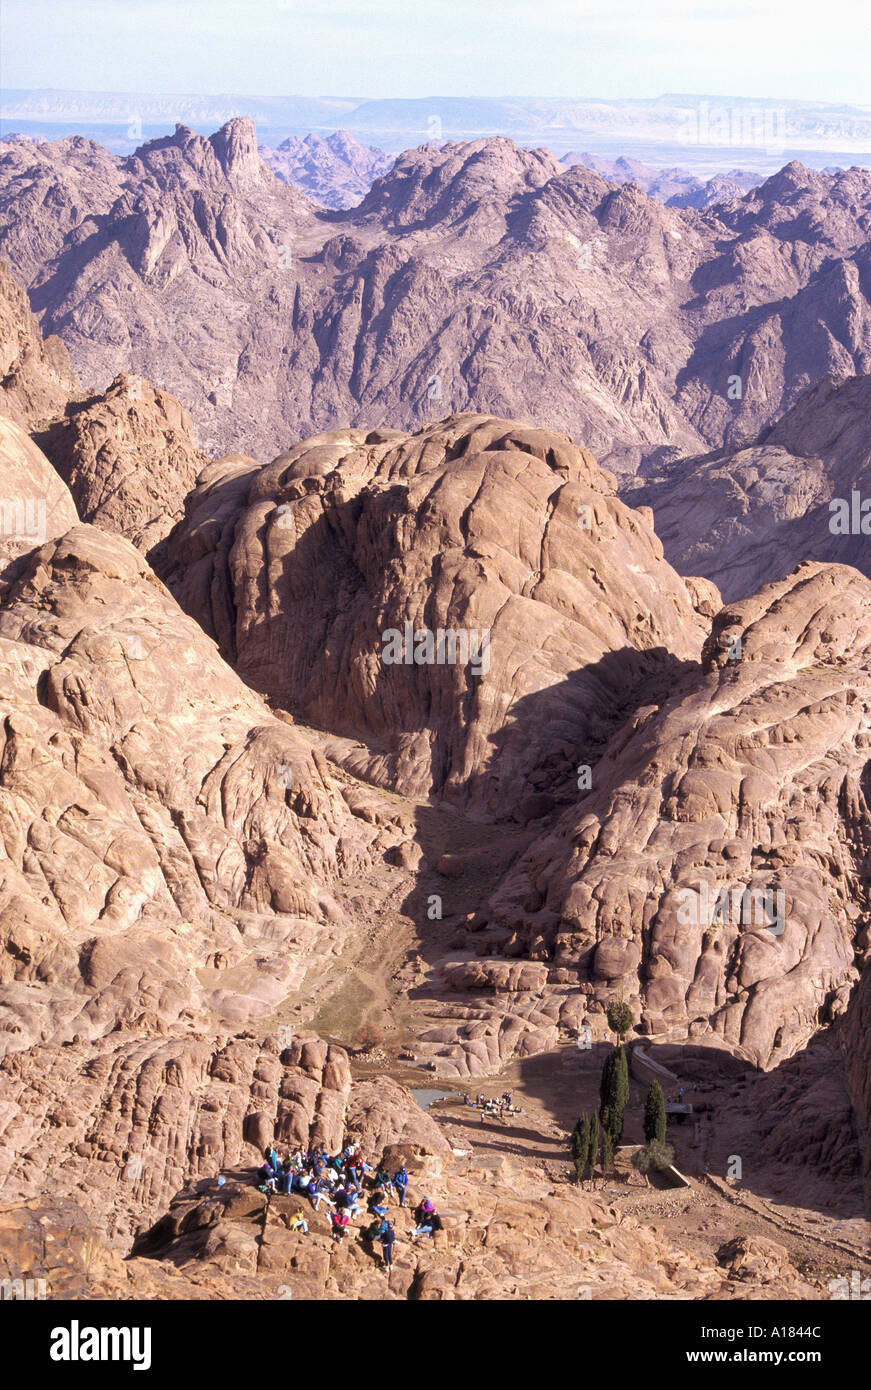 Pèlerins Chrétiens en prière dans le paysage granitique du Mont Sinaï et le mont Moïse Egypte Afrique UN C Waltham Banque D'Images